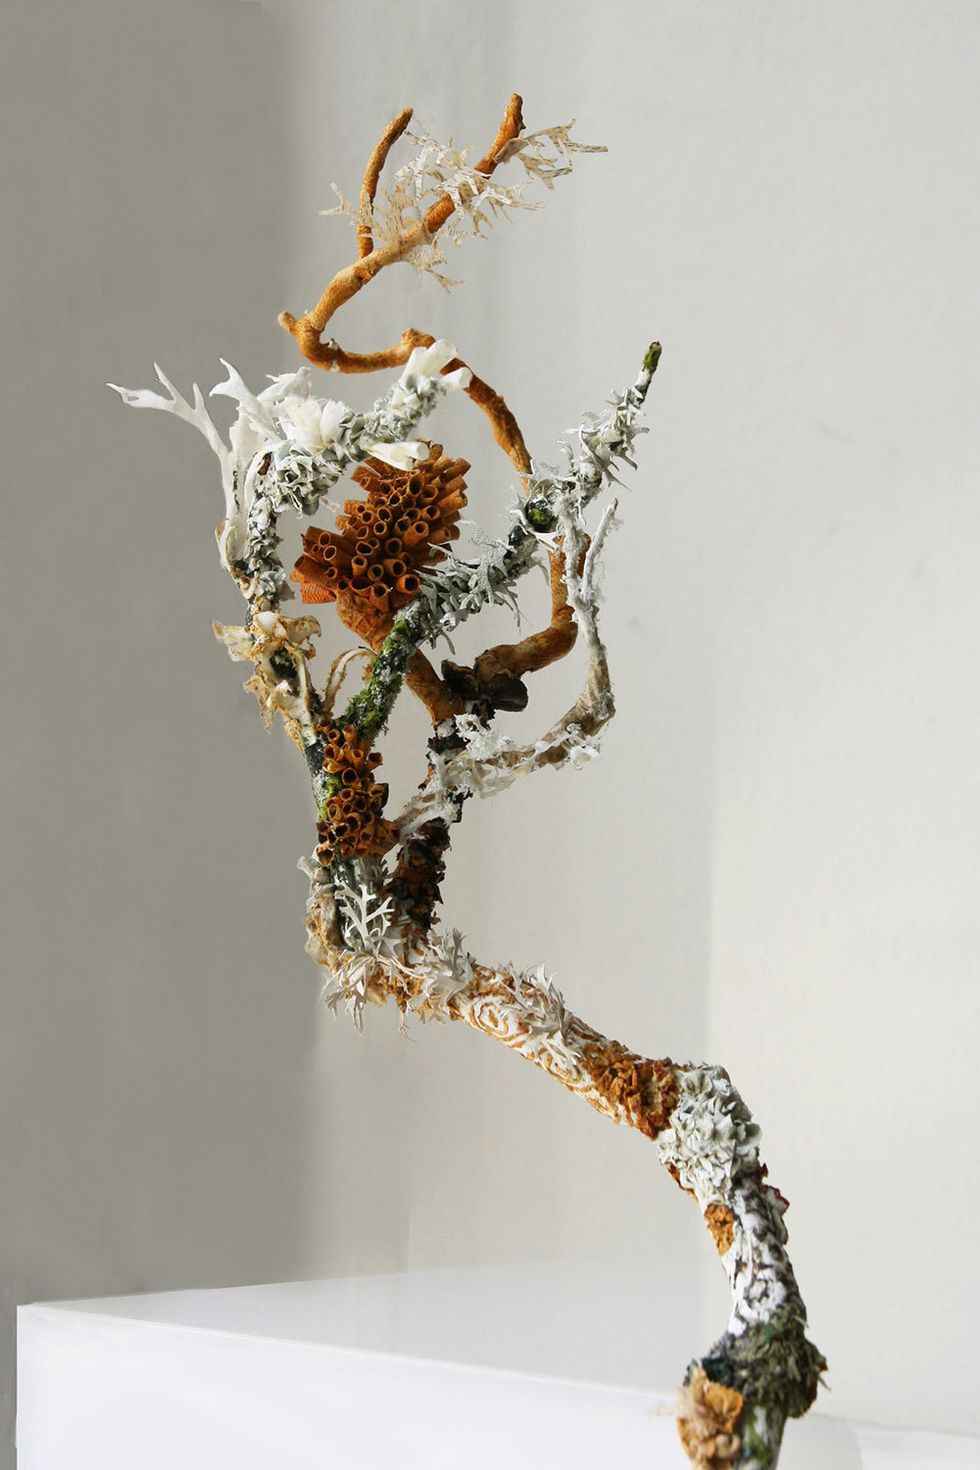 Untitled (Lichens)